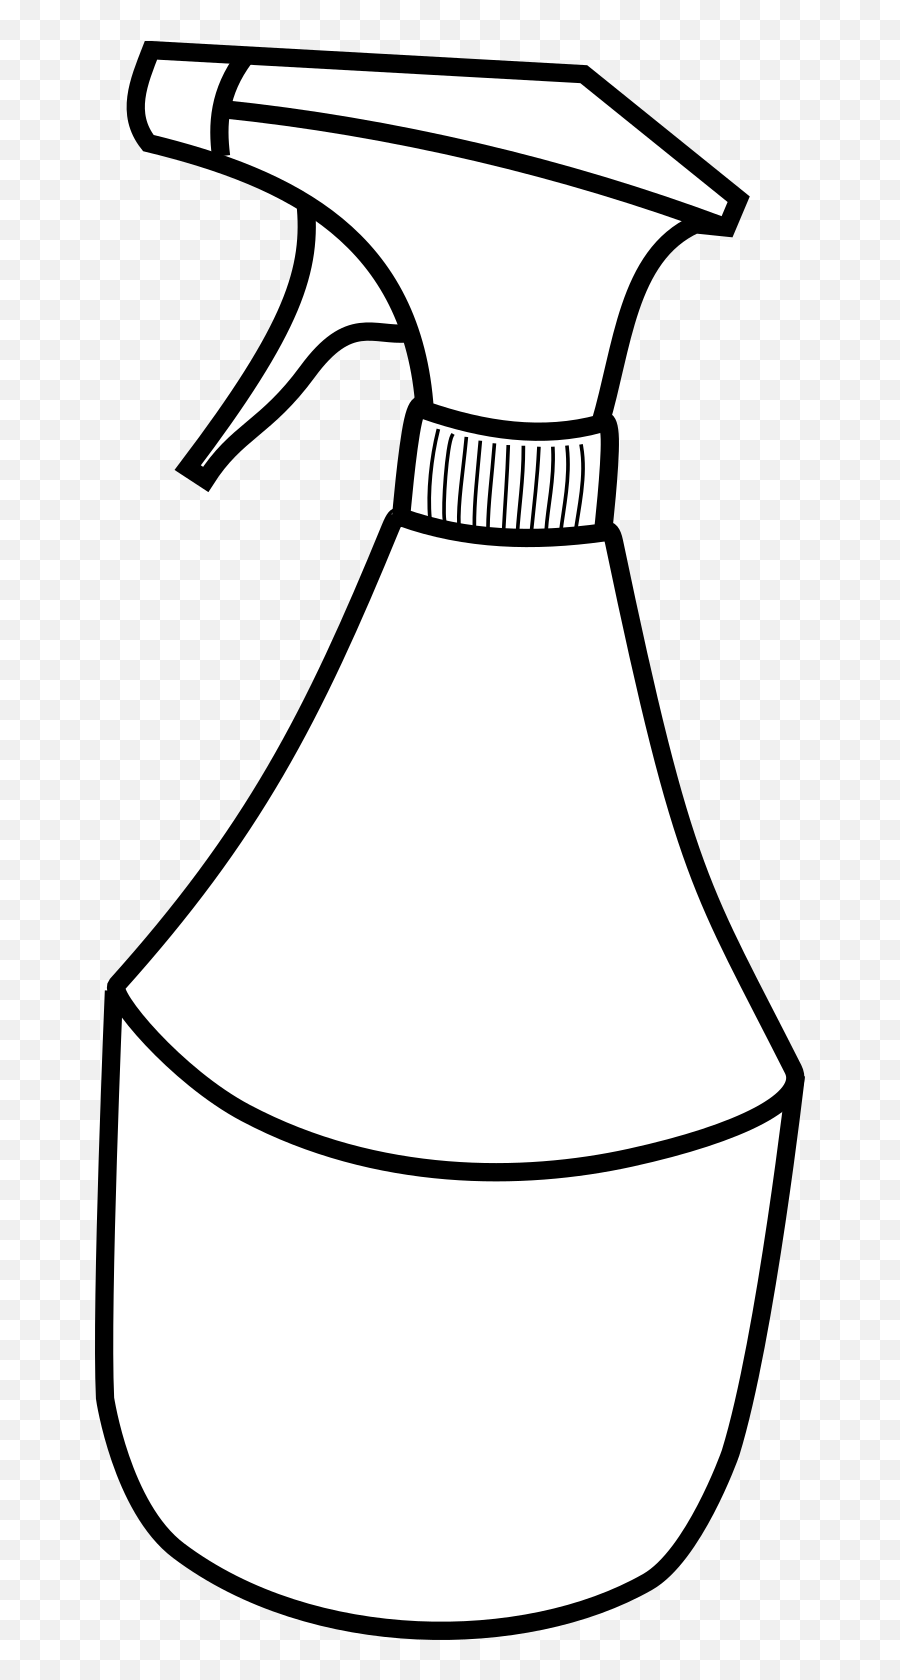 Free Beer Bottle Clipart Black And White Download Free Beer - Apple Cider Vinegar Emoji,Beer Bottle Clipart Black And White